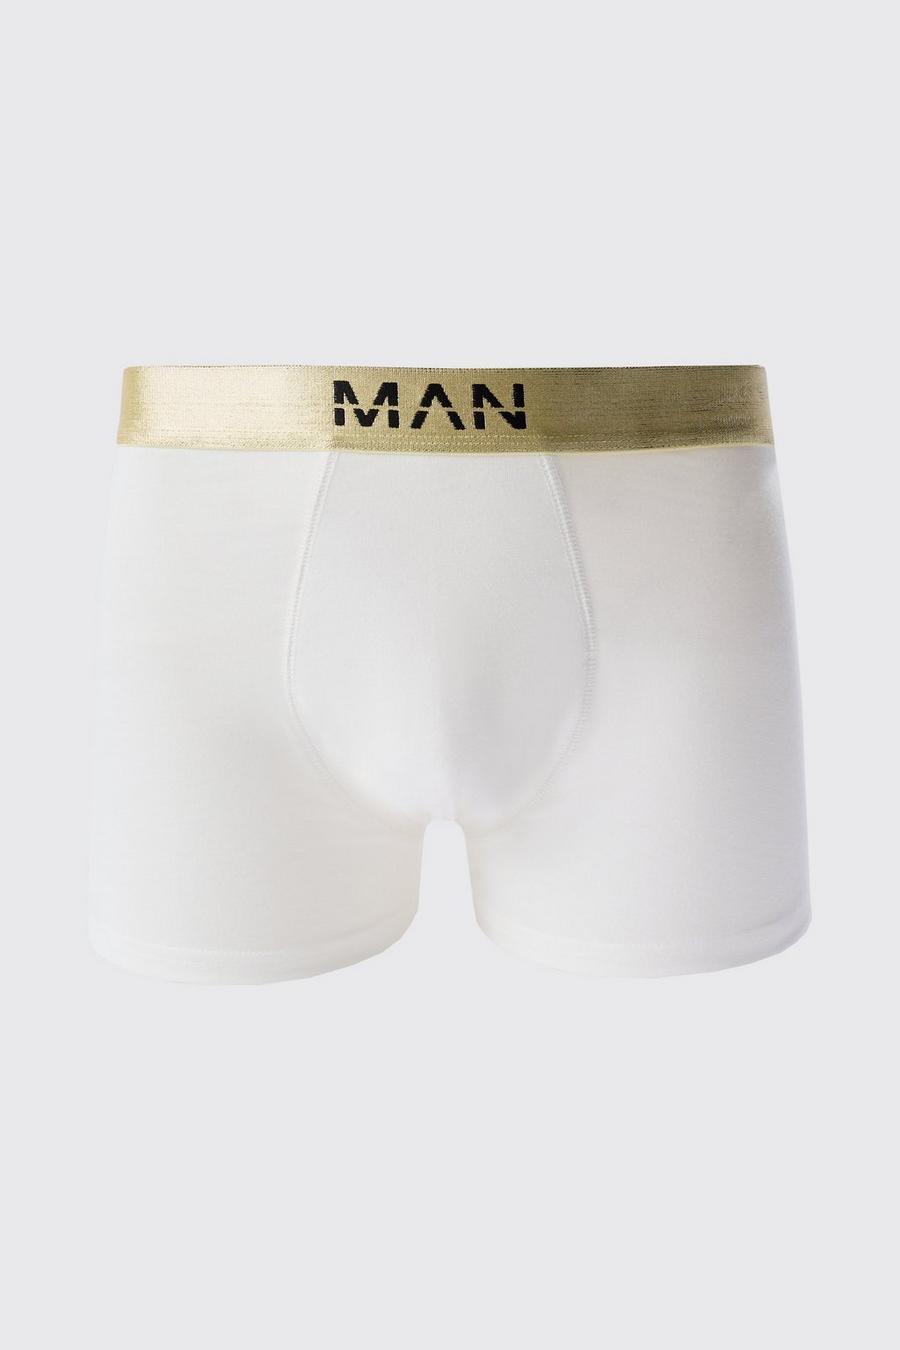 Boxer Man Dash color oro con fascia in vita - set di 3 paia, Multi